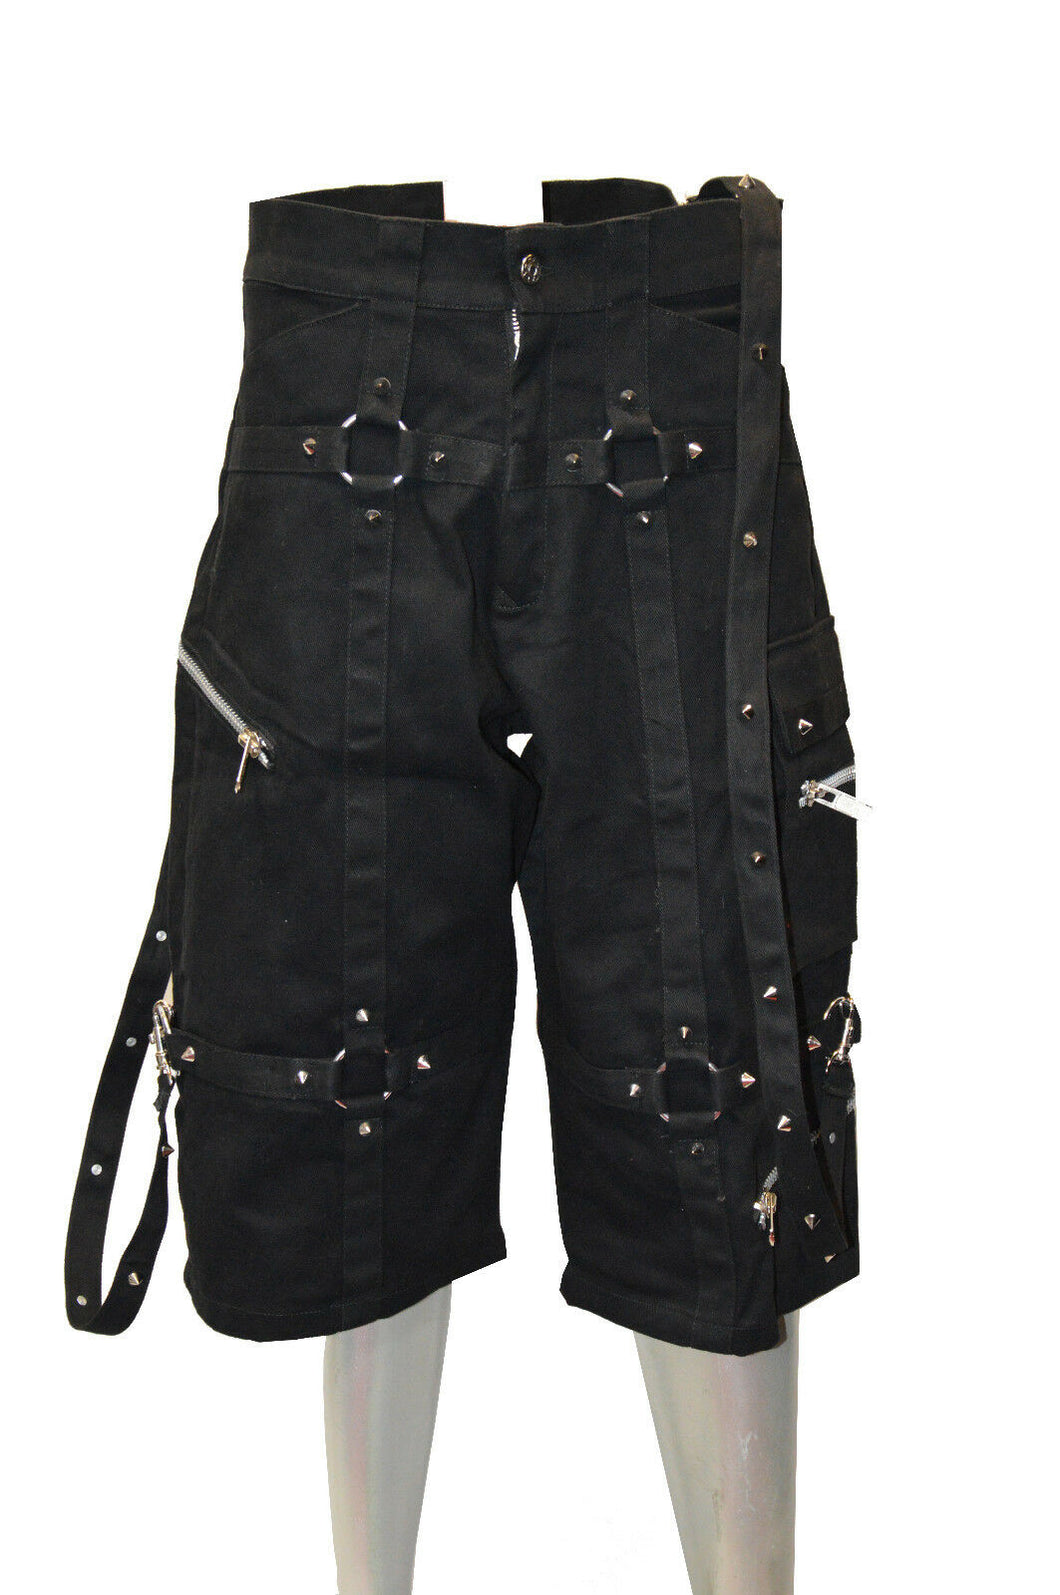 Short pants jeans denim punk gothic NEW size. 30 - 44